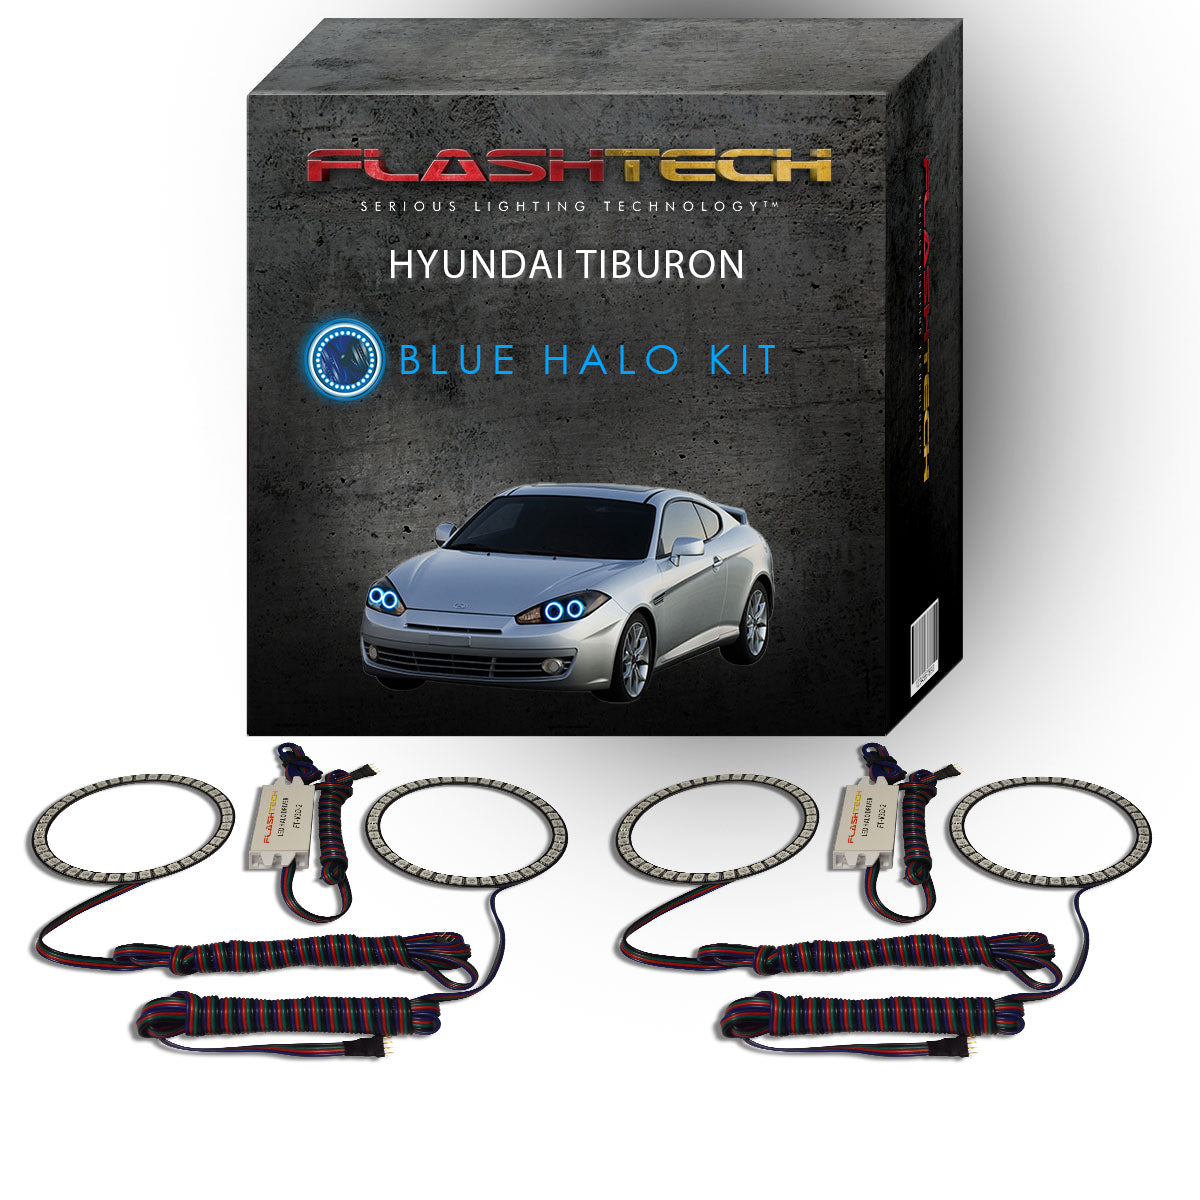 Hyundai-Tiburon-2007, 2008-LED-Halo-Headlights-RGB-No Remote-HY-TB0708-V3H